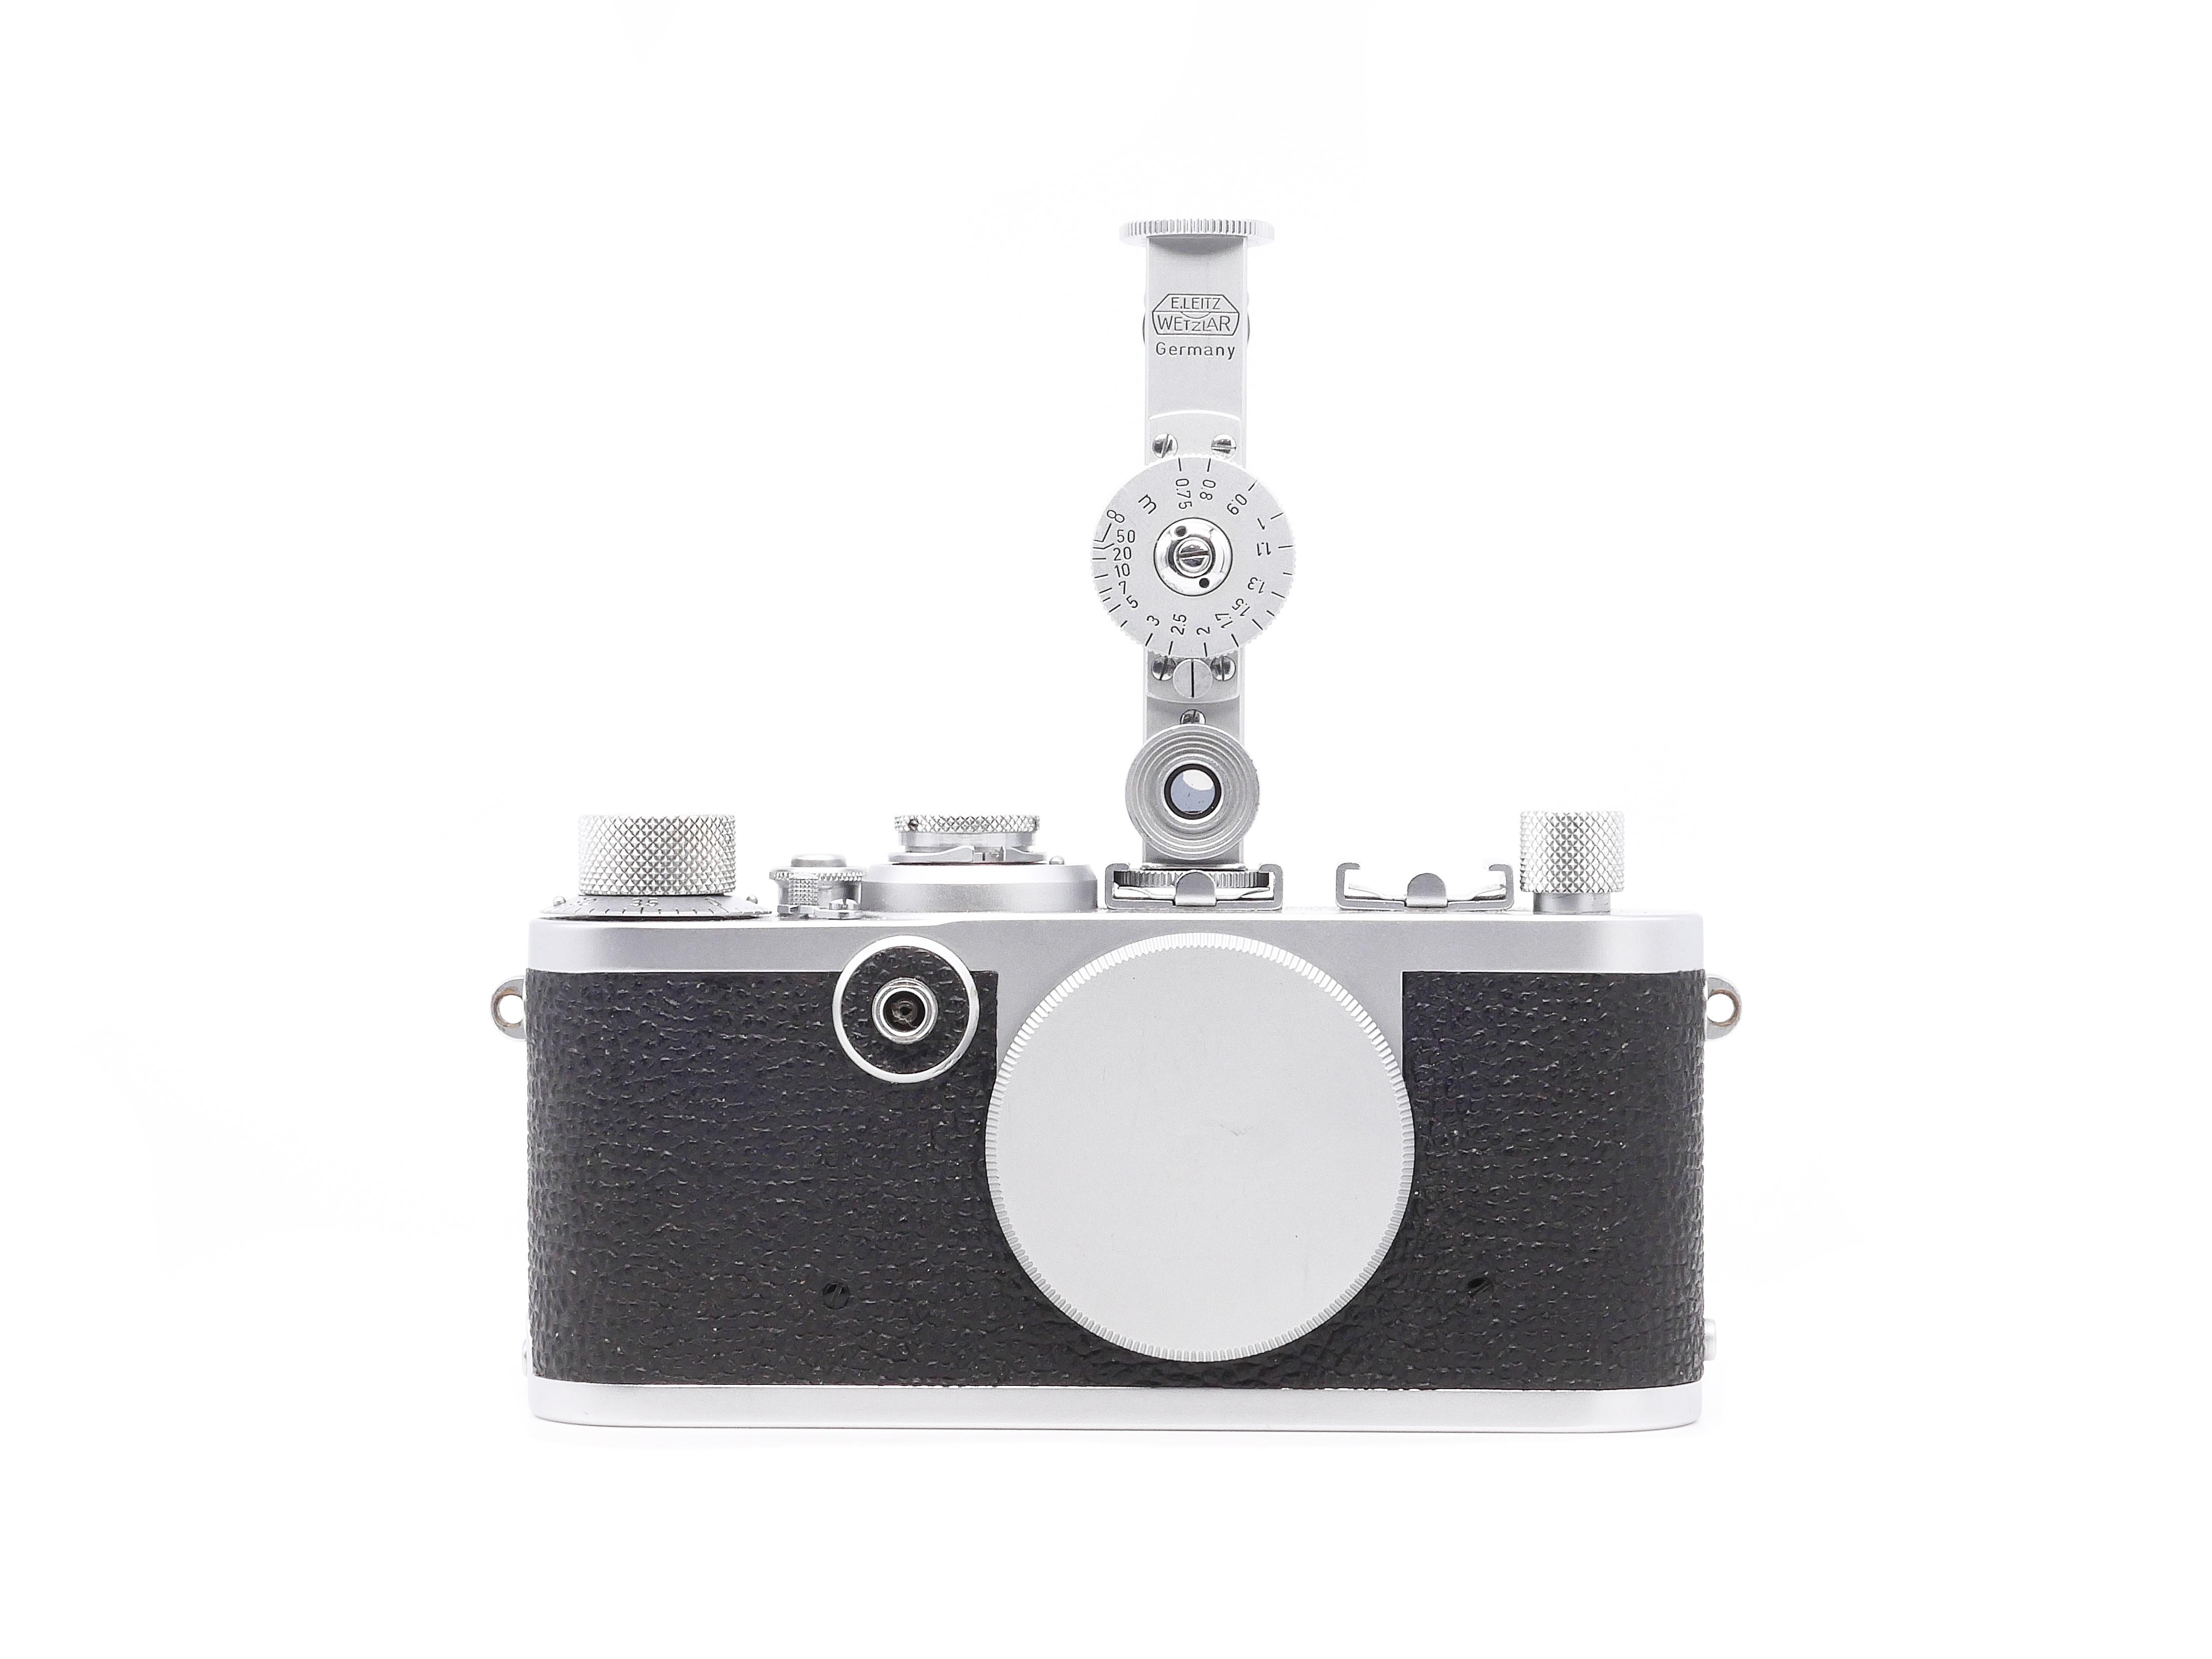 Leica If mit Entfernungsmesser